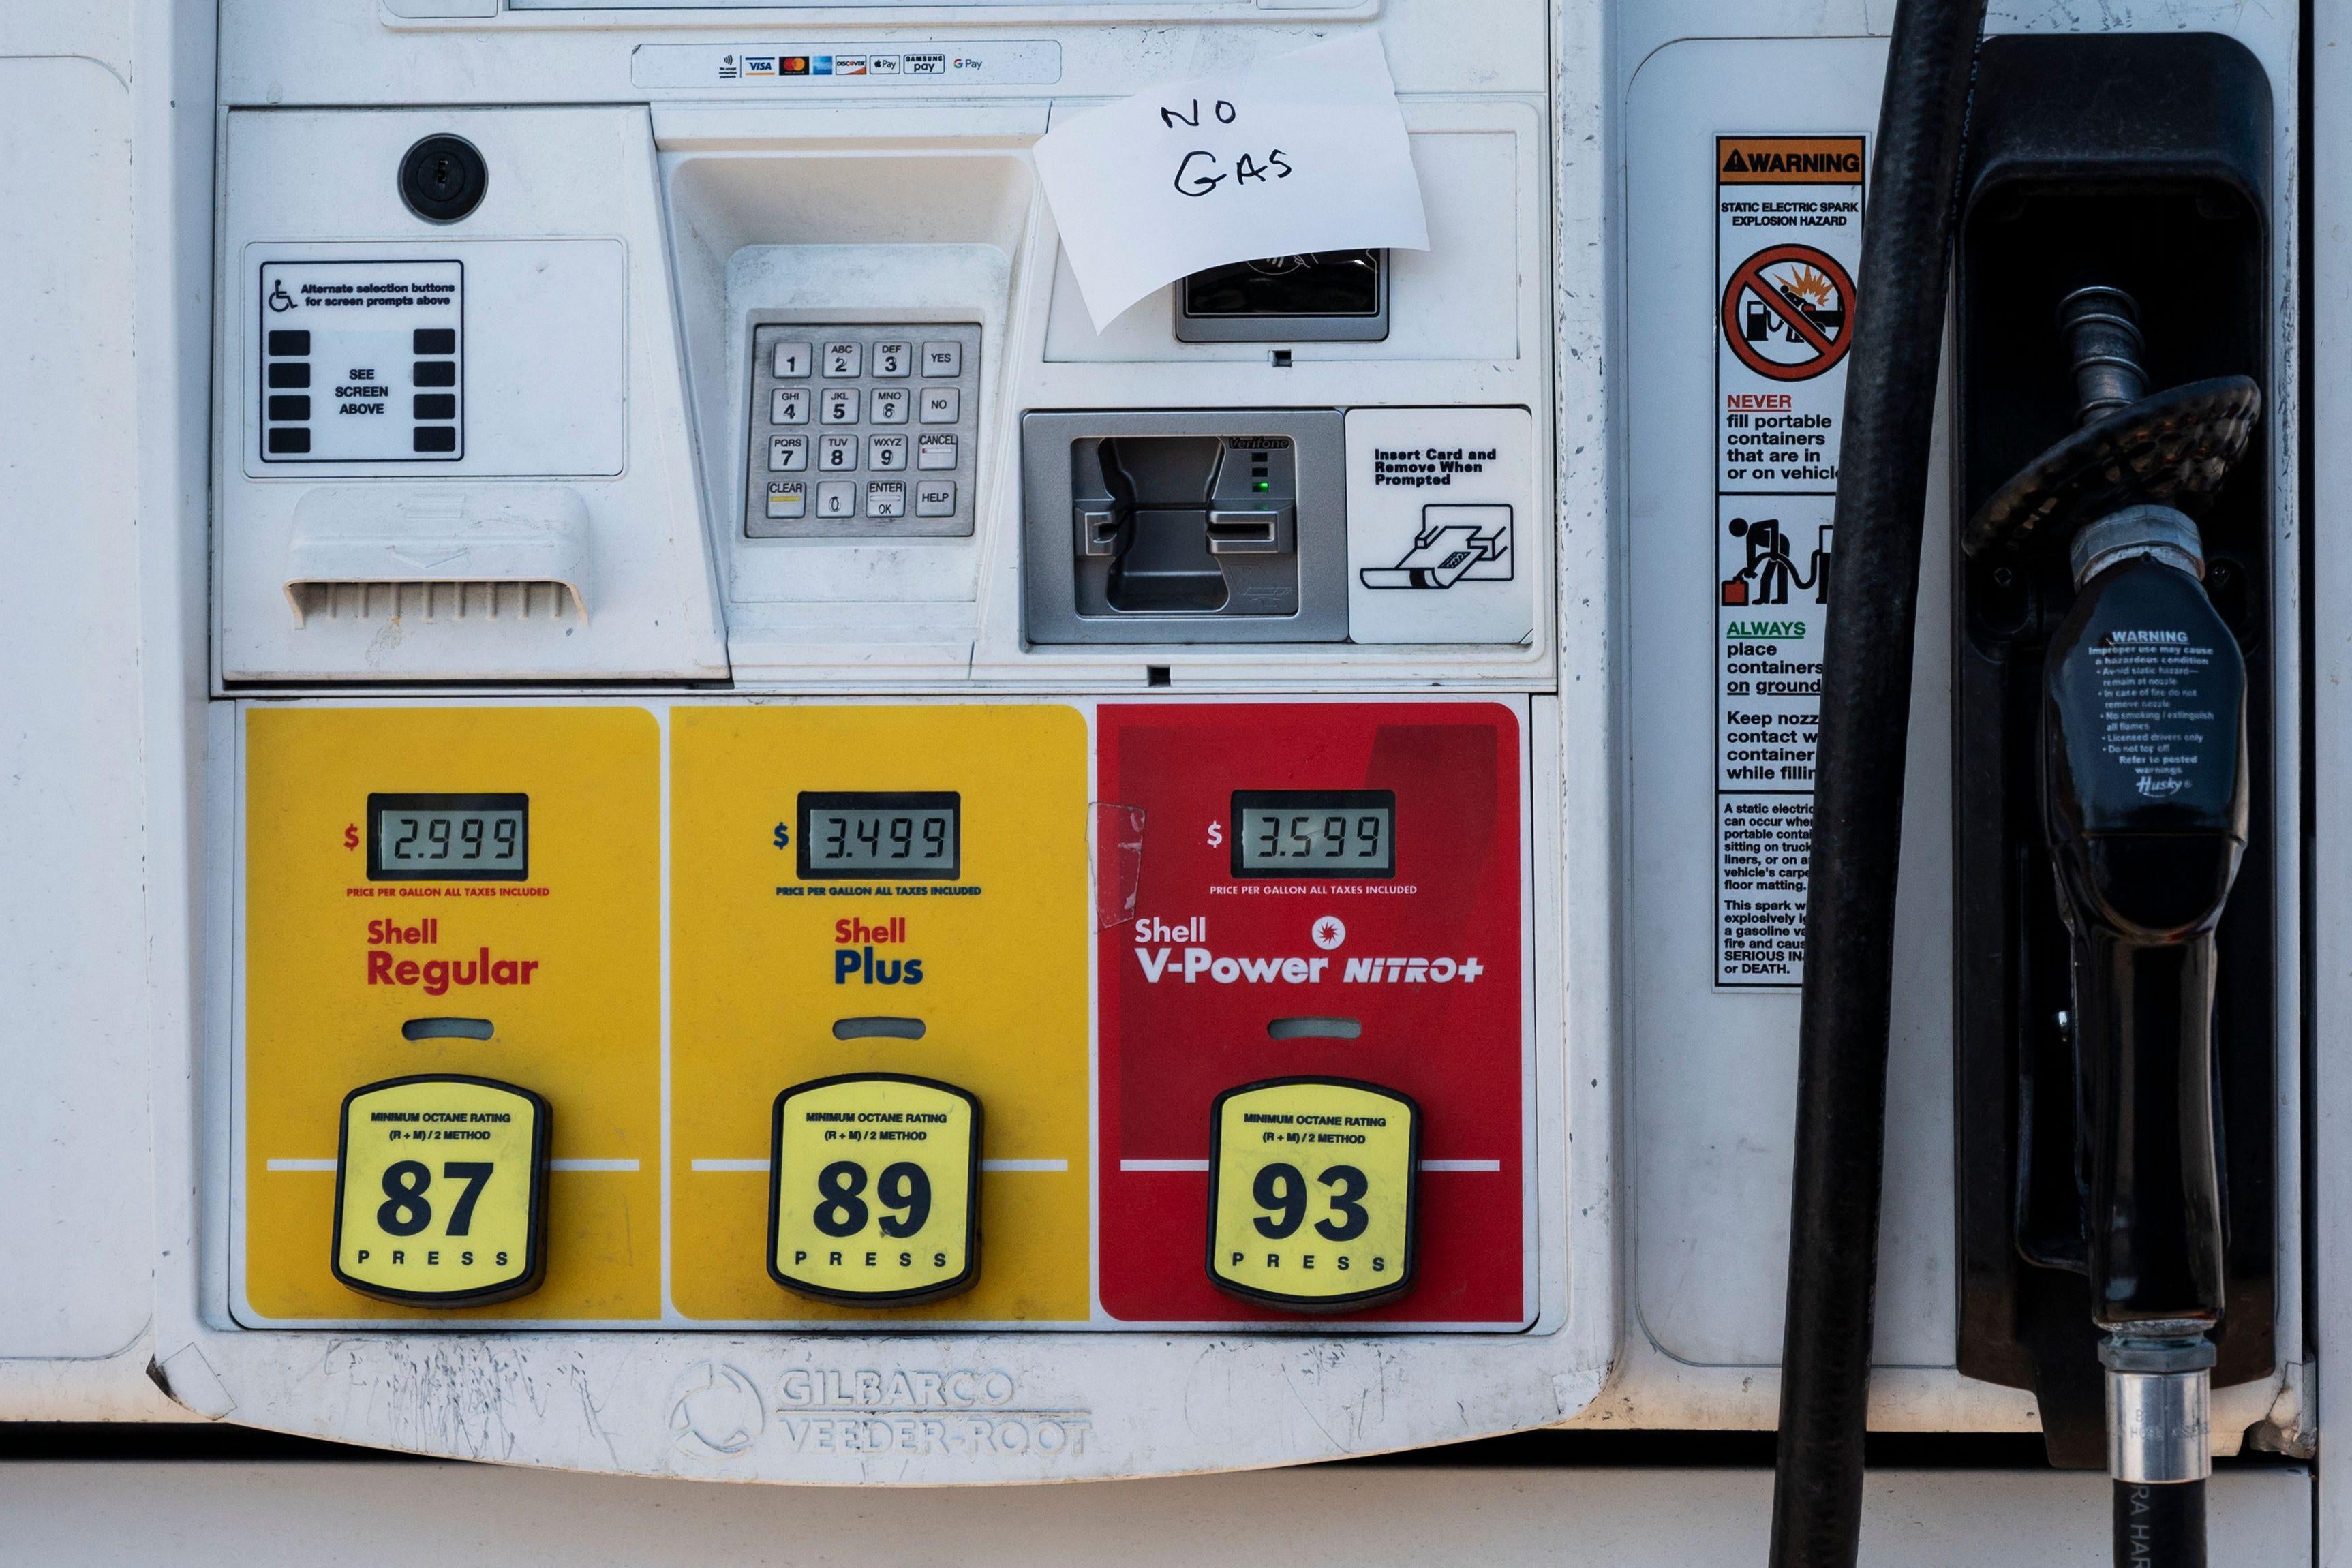 A handwritten "No Gas" sign on a gas pump.